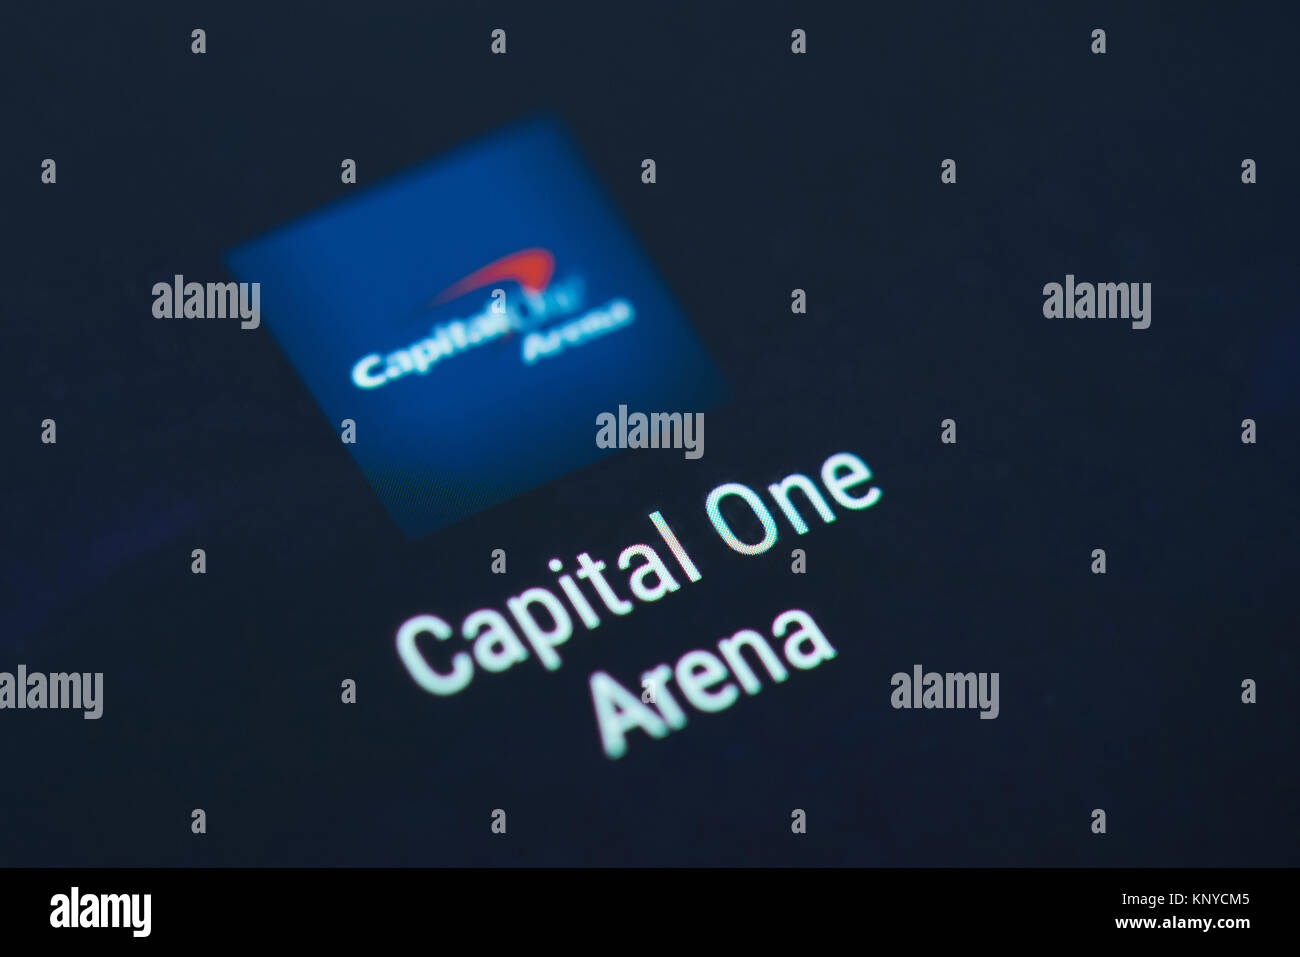 New York, USA - Dezember 12, 2017: Capital One Bank Symbol auf Bildschirm des Smartphones. Capital One Bank App Icon mit Kopie Speicherplatz auf scre Stockfoto